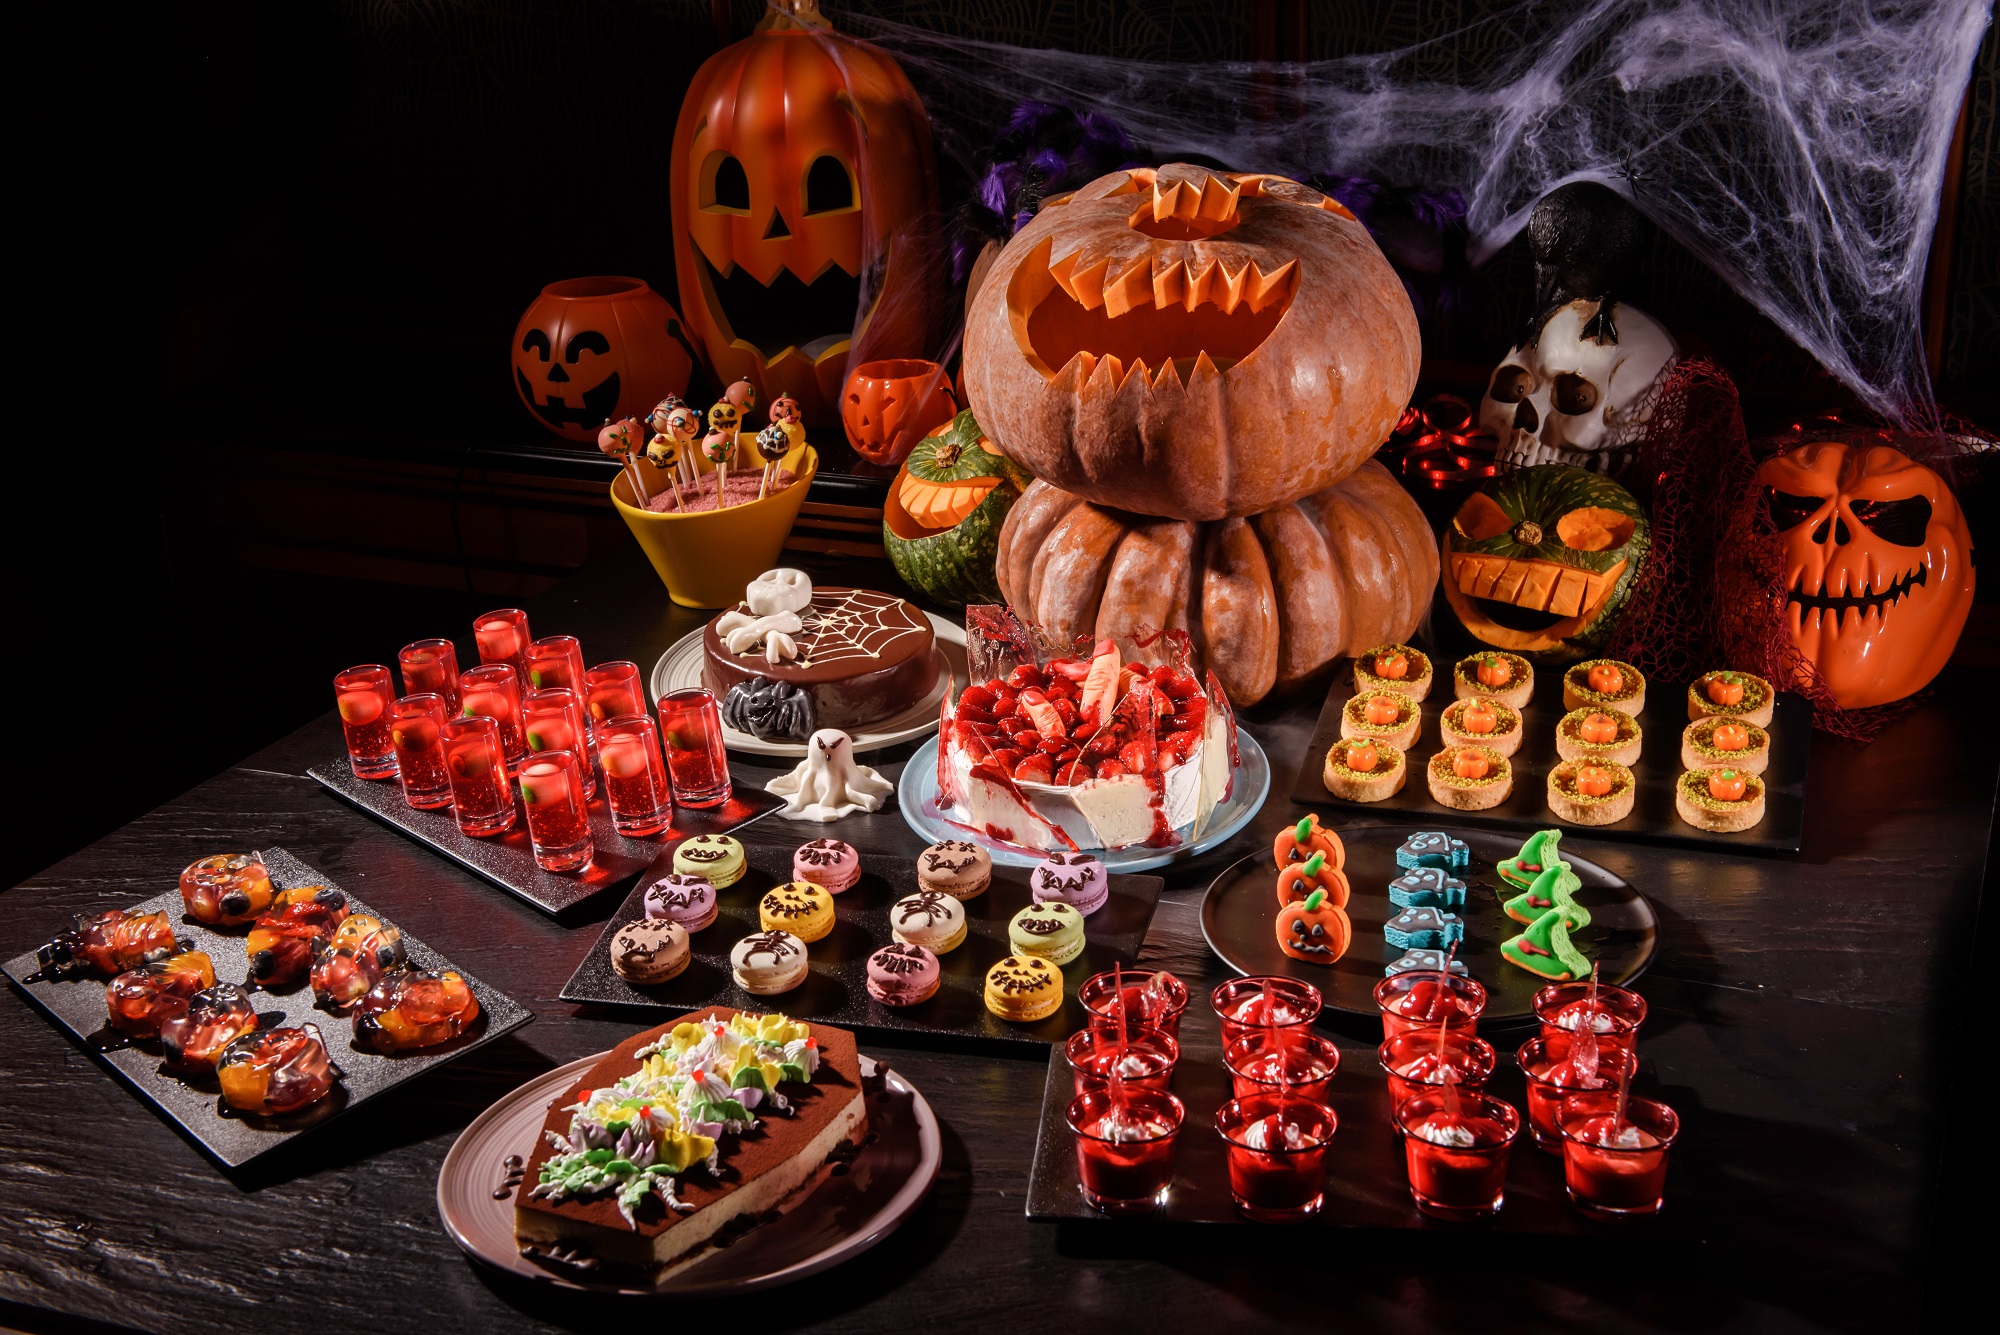 Trick or Treat at Café 395’s Spooky Halloween Dessert Buffet